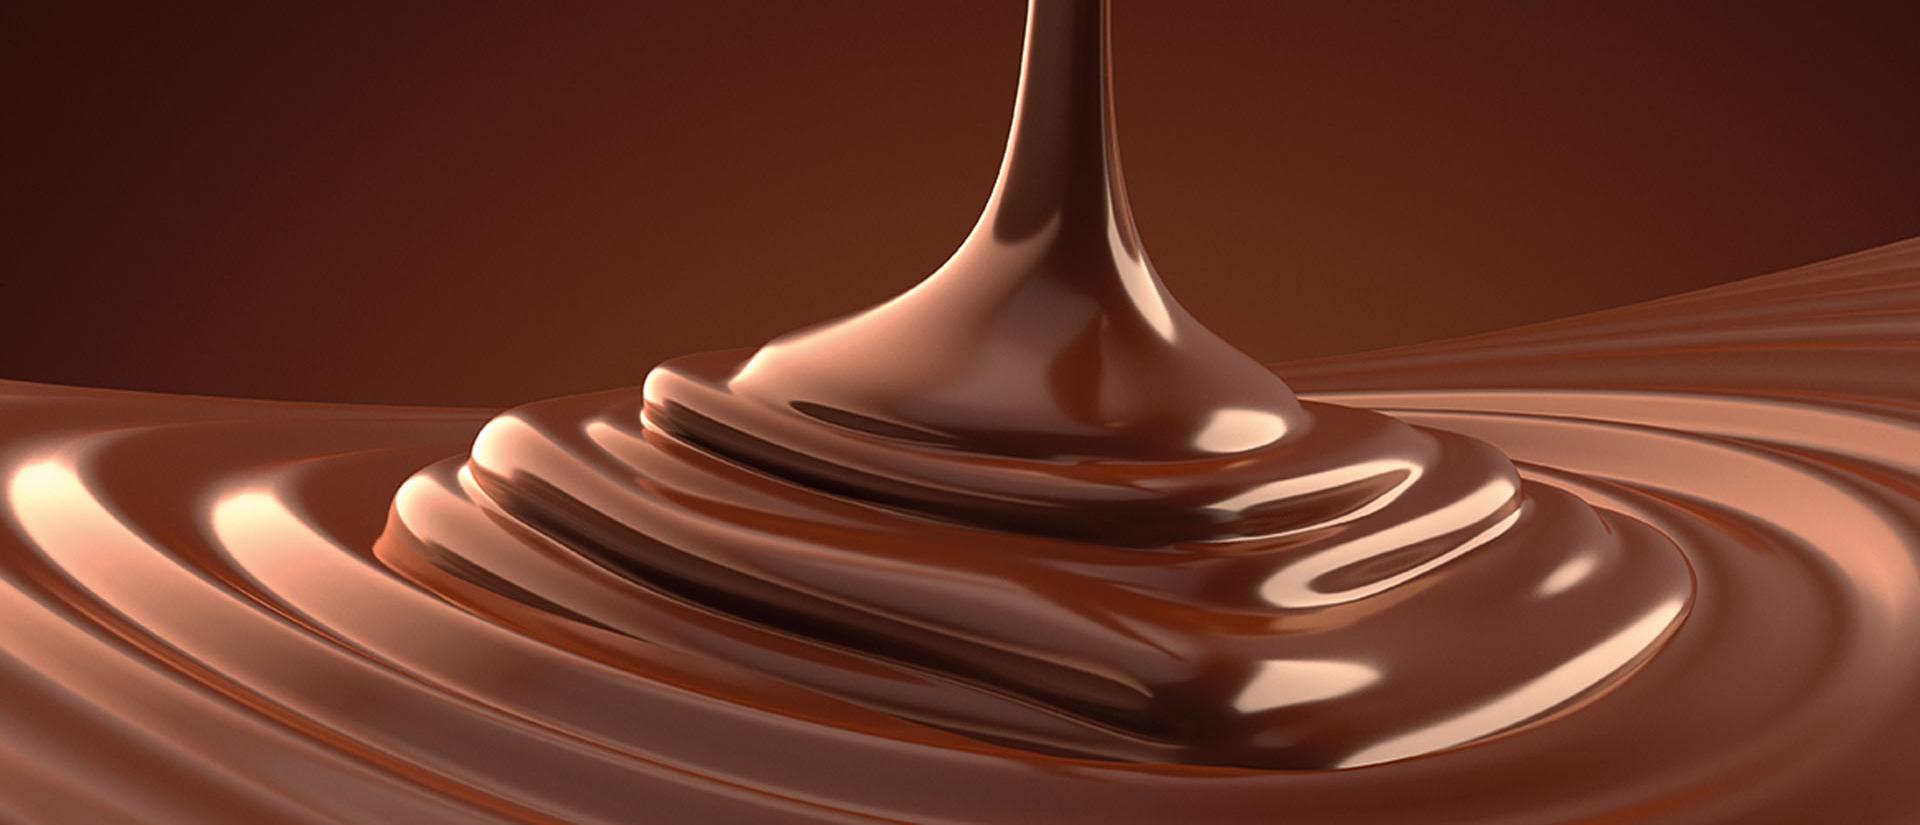 Шоколад рендер